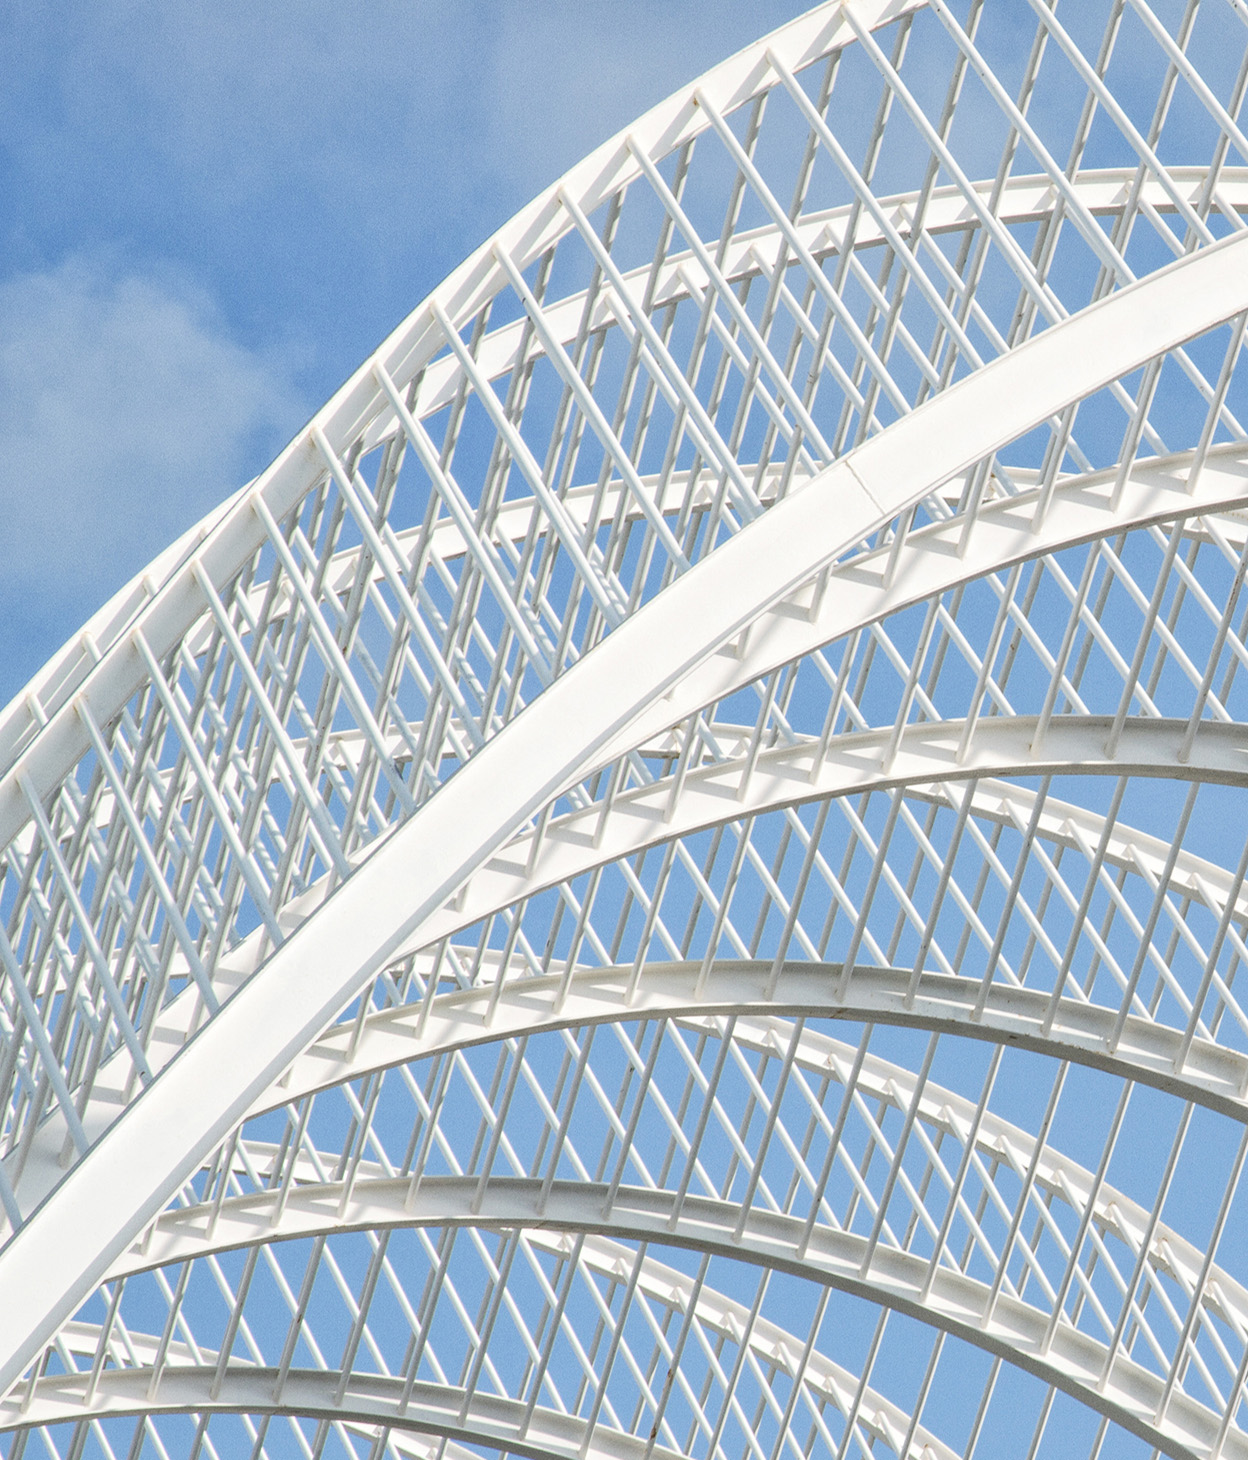 Imagen de una estructura de arcos de metal con un cielo azul de fondo.